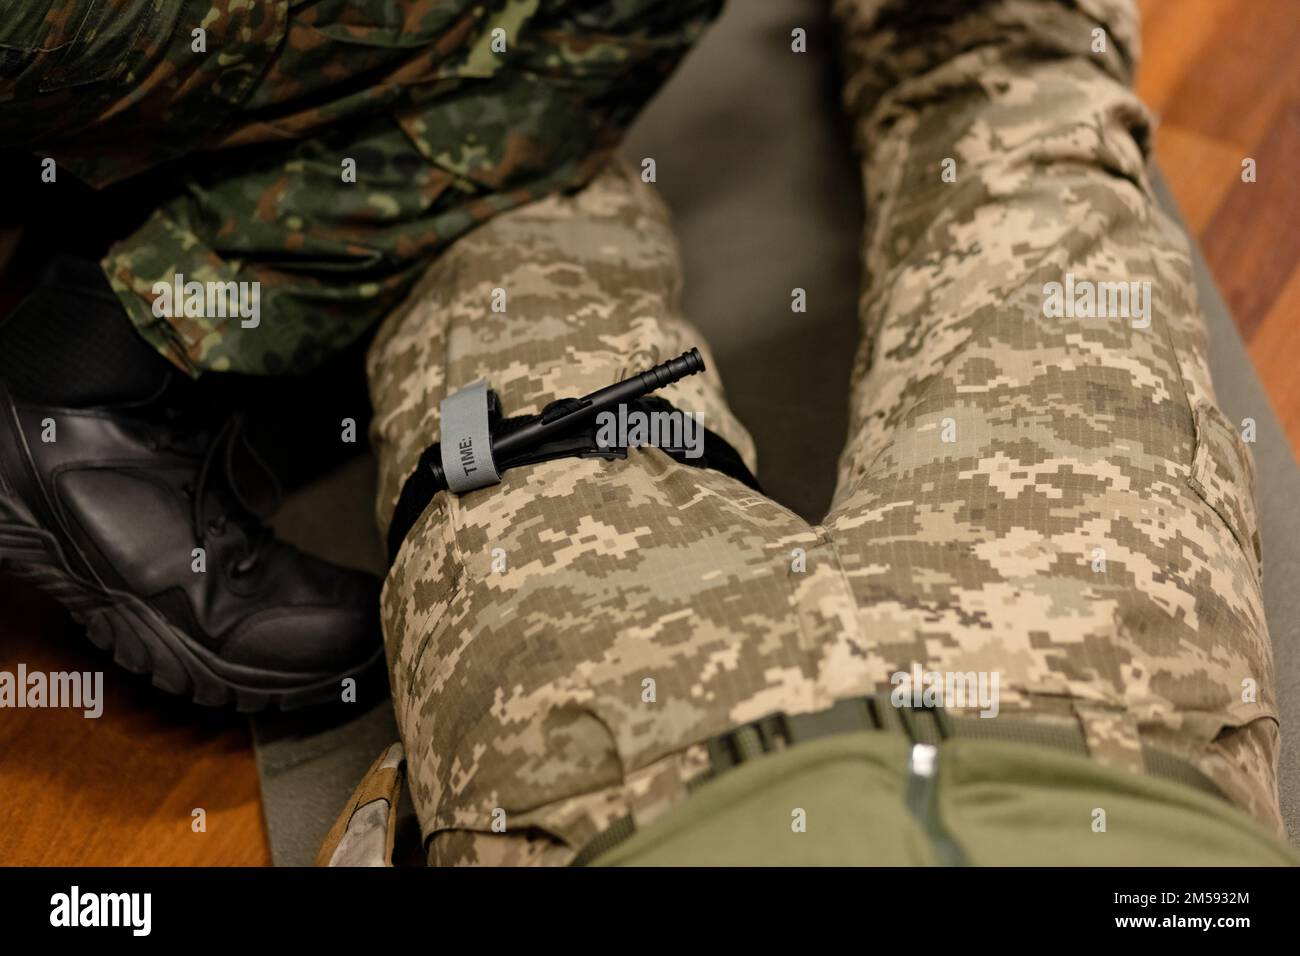 Ein Militär demonstriert einen Kampfschlauch, um Blut während der ersten Hilfe zu stoppen. Anweisungen für Kampftaktik-Ausrüstung. Stockfoto